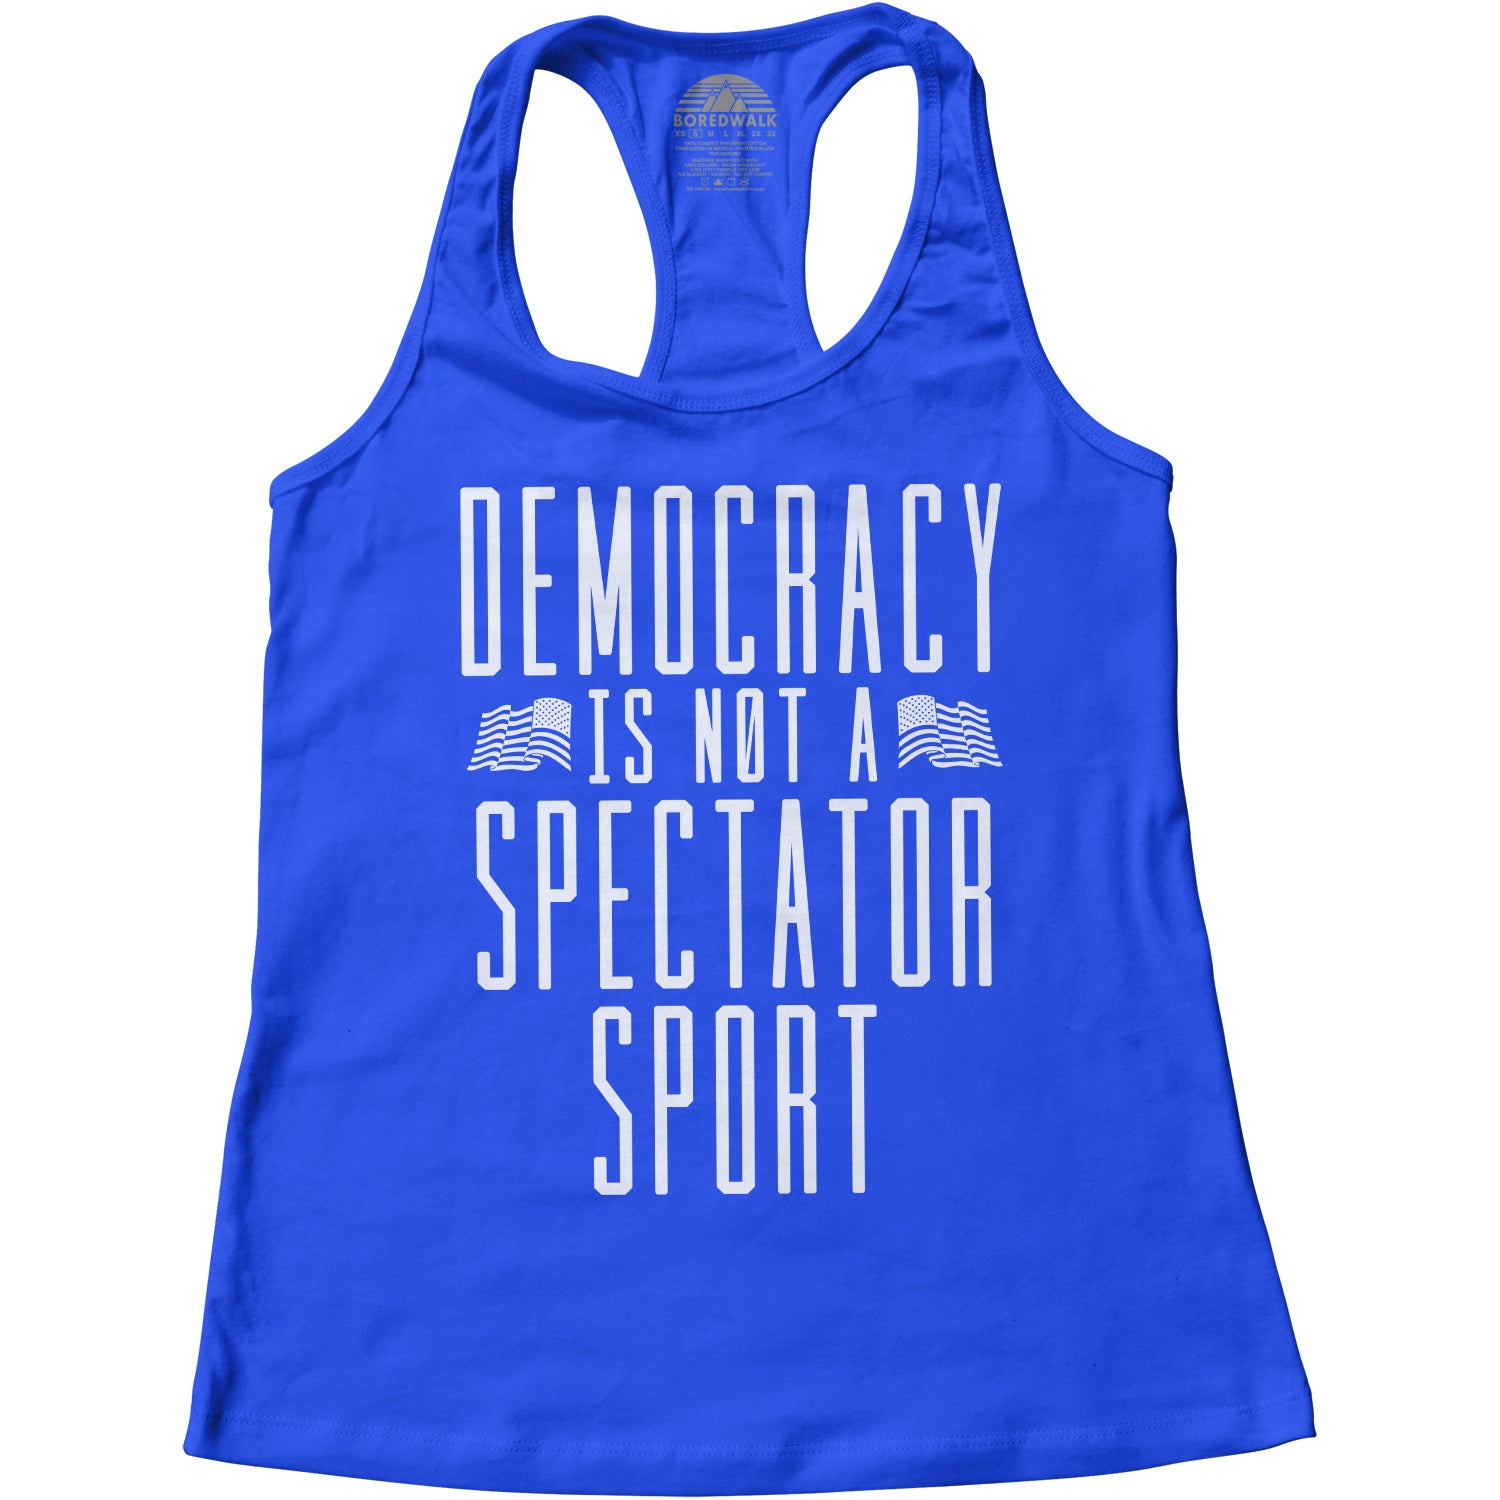 Women's Democracy Is Not a Spectator Sport Racerback Tank Top